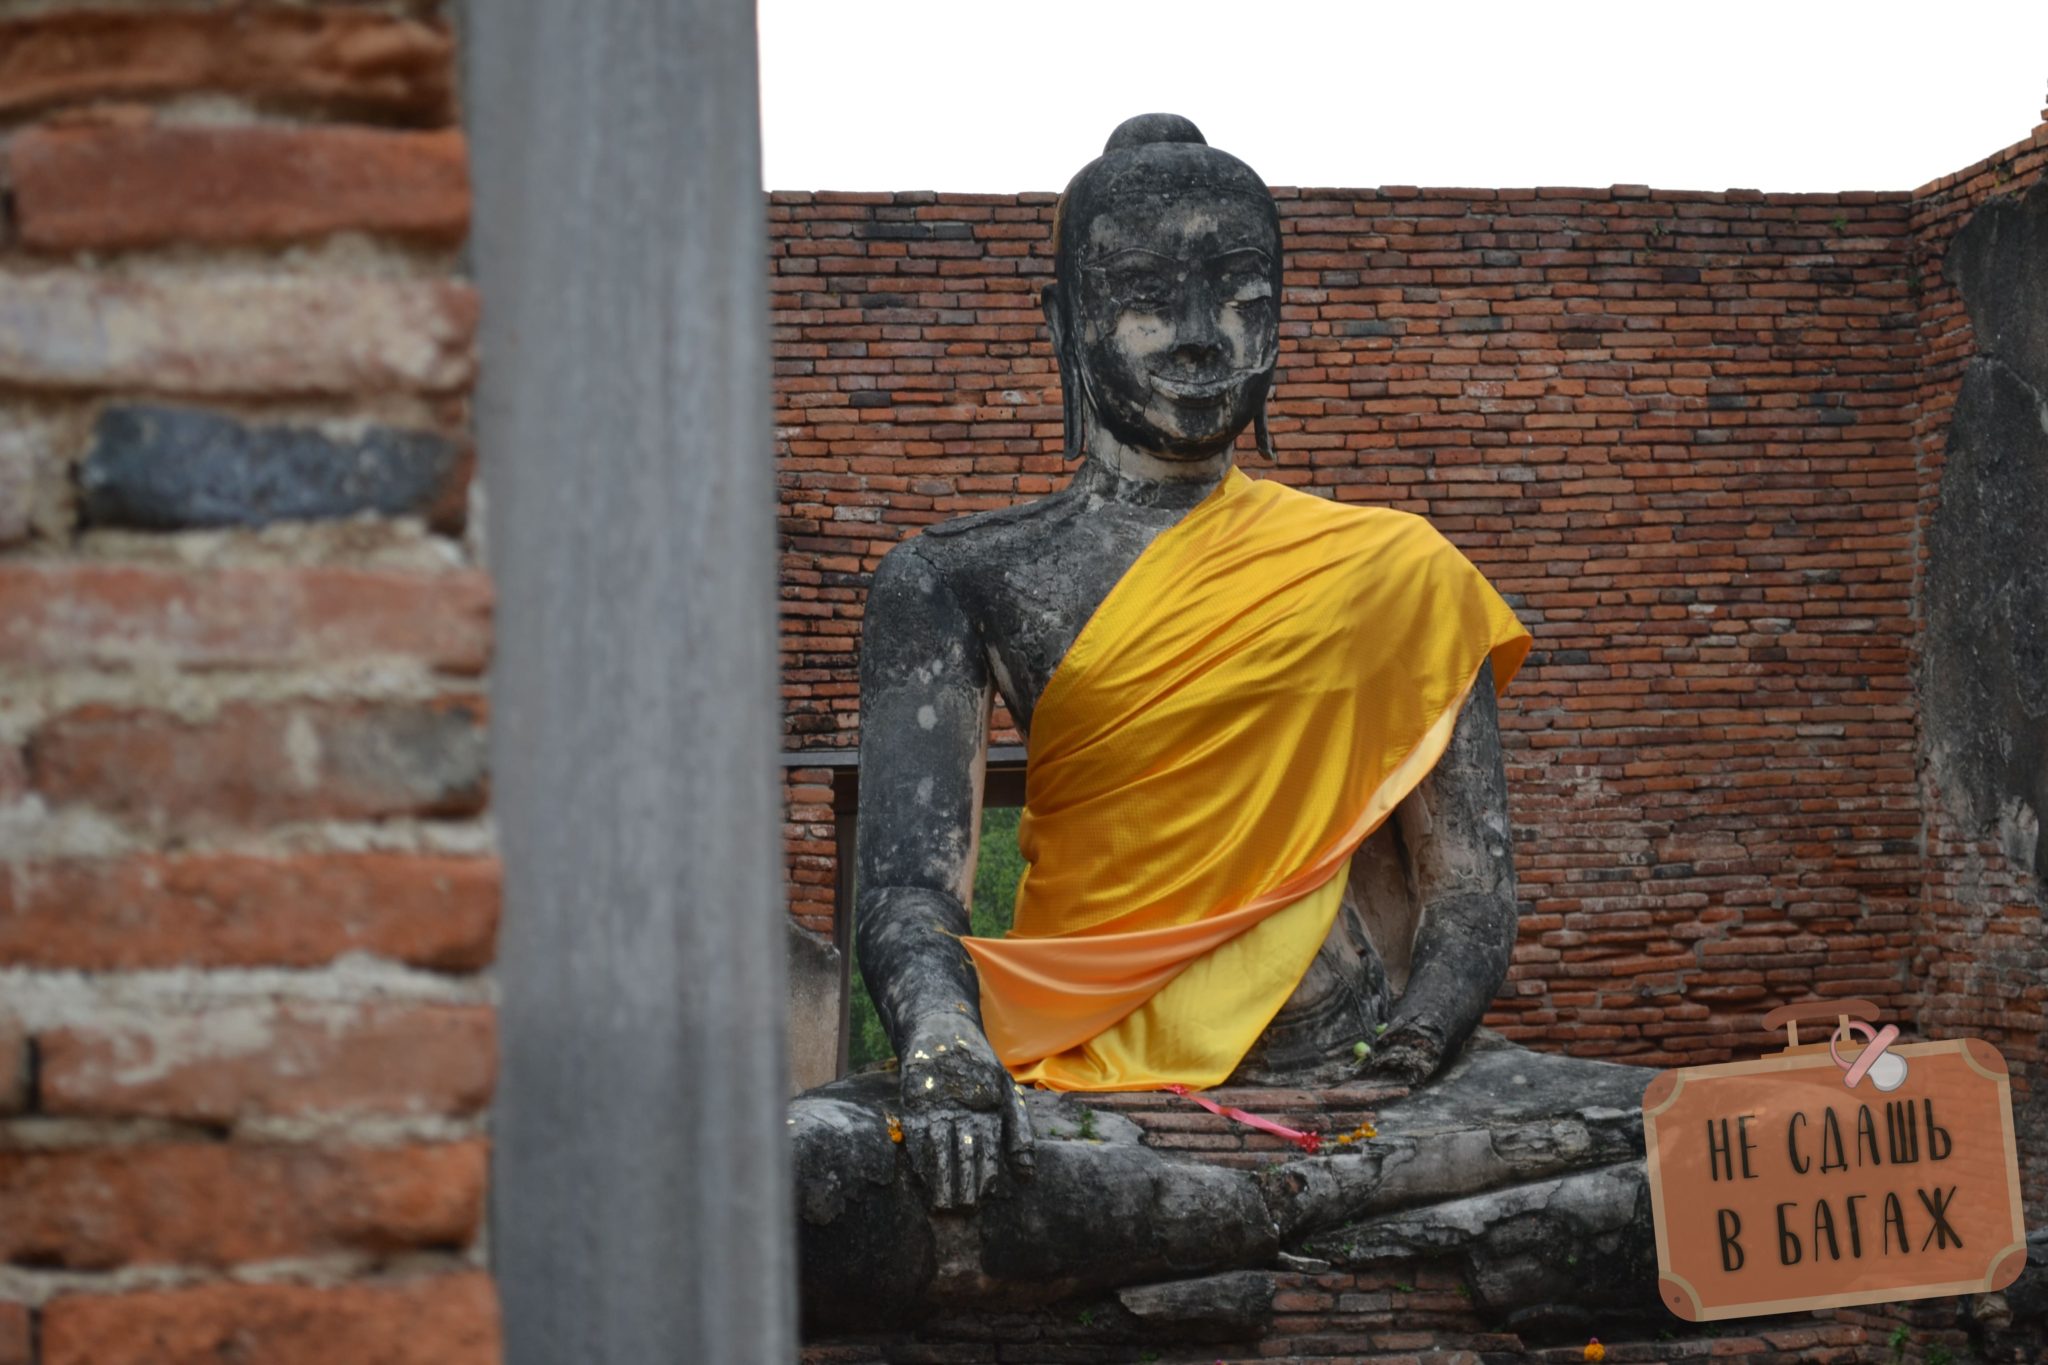 Wat Wora Chet Tha Ram